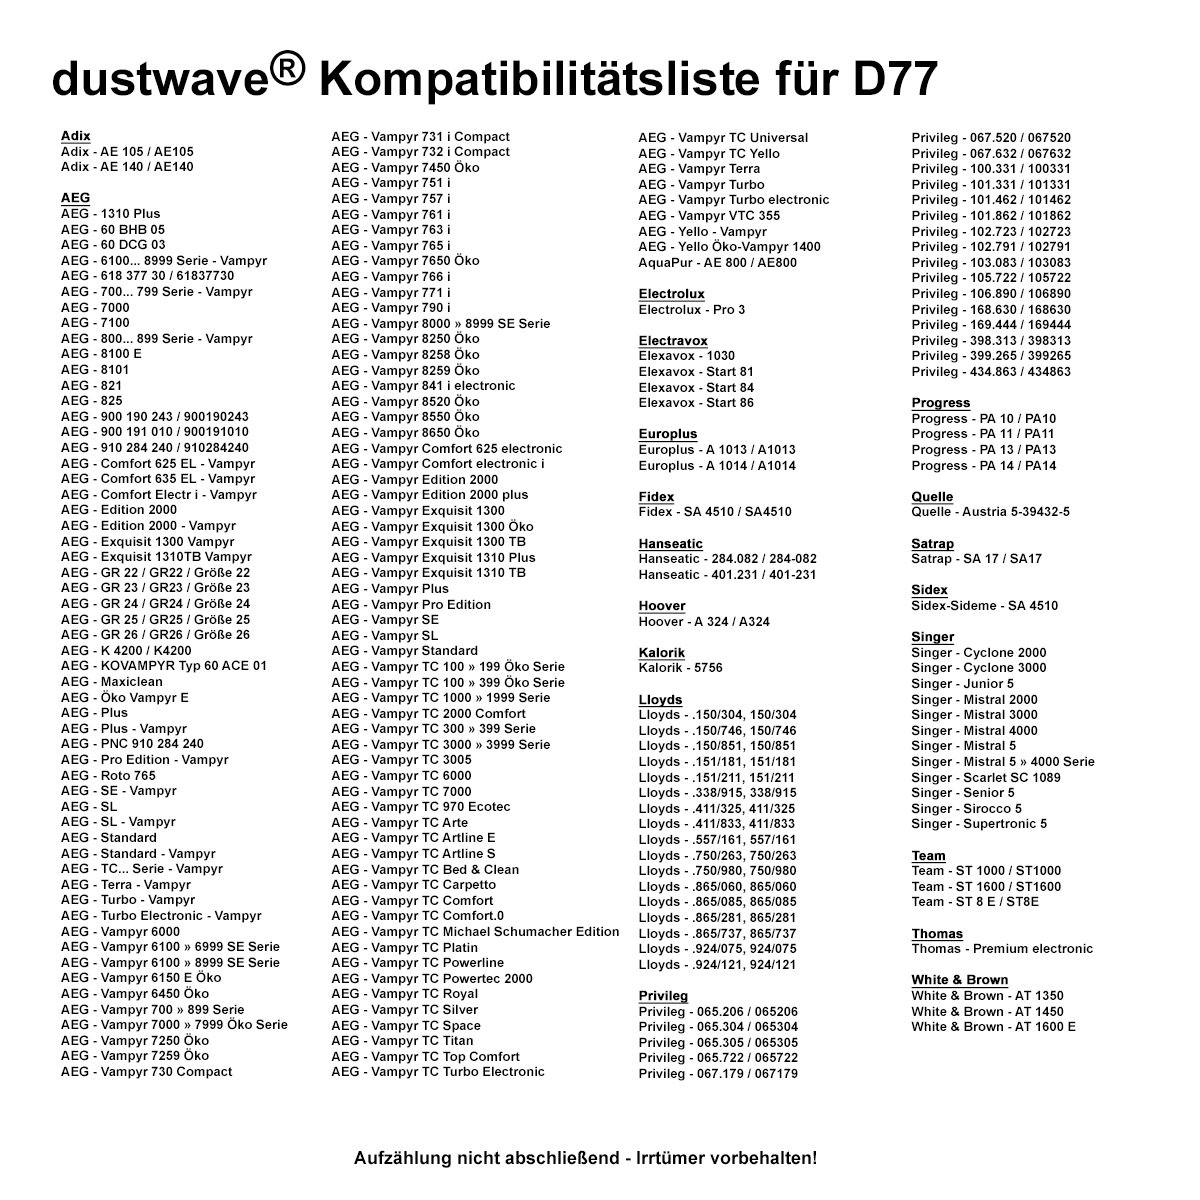 Dustwave® 1 Staubsaugerbeutel für AEG GR26 / Größe 26 - hocheffizient mit Hygieneverschluss - Made in Germany